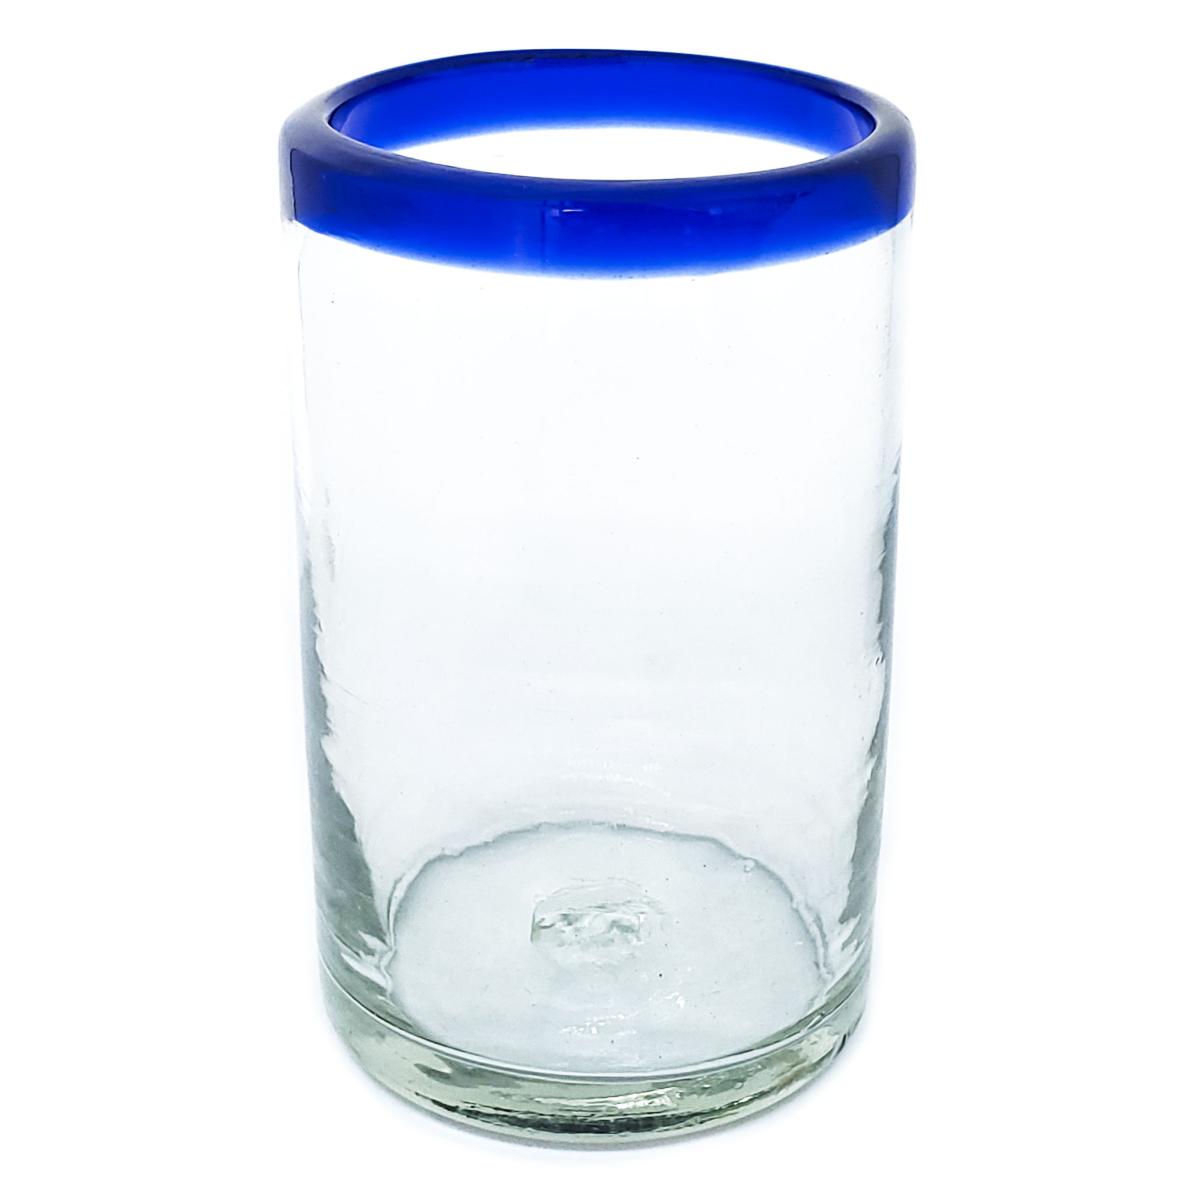 Vasos de Vidrio Soplado al Mayoreo / vasos grandes con borde azul cobalto / Éstos artesanales vasos le darán un toque clásico a su bebida favorita.